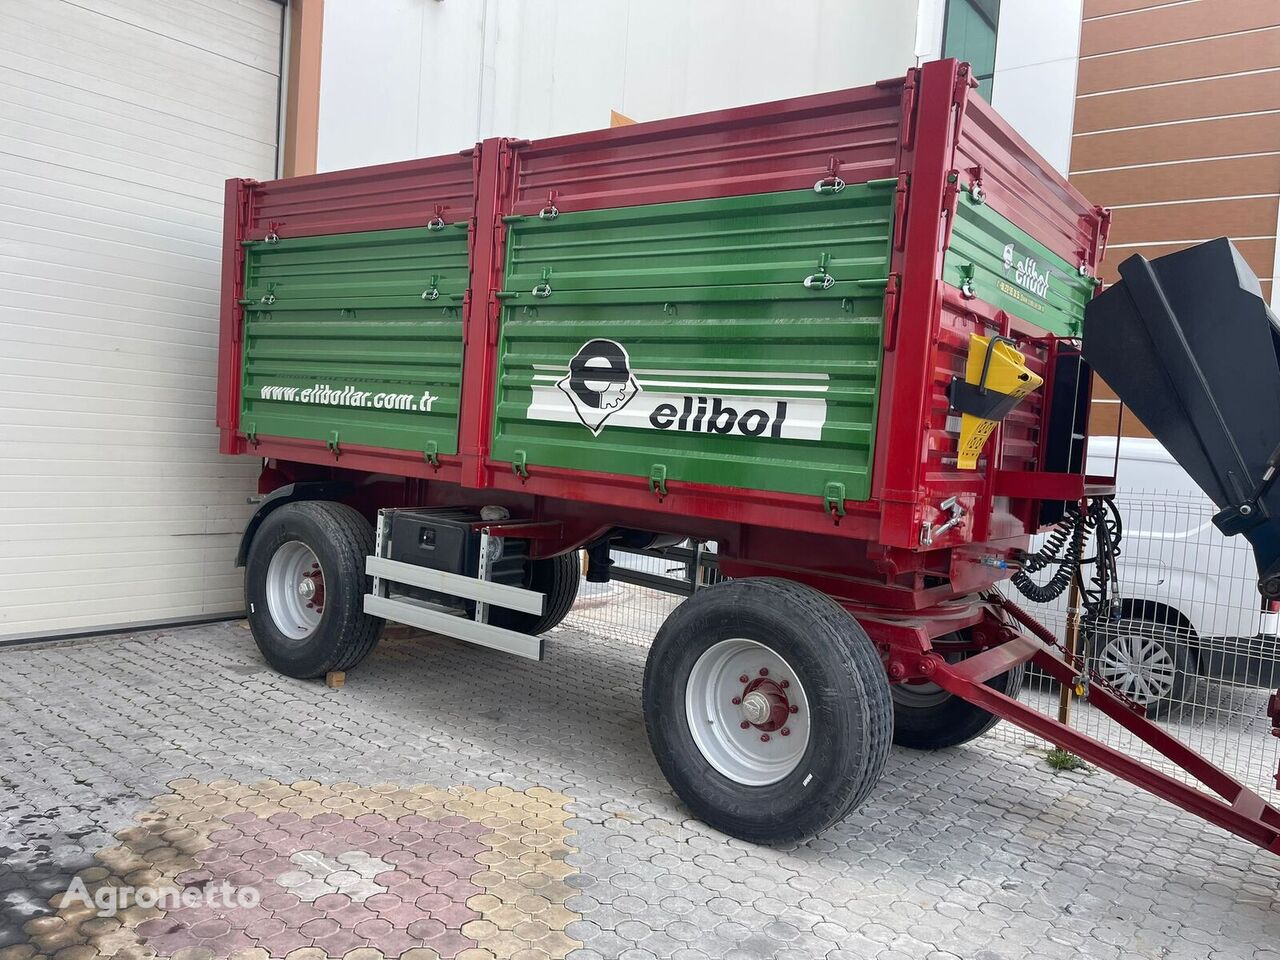 Elibol tractor trailer